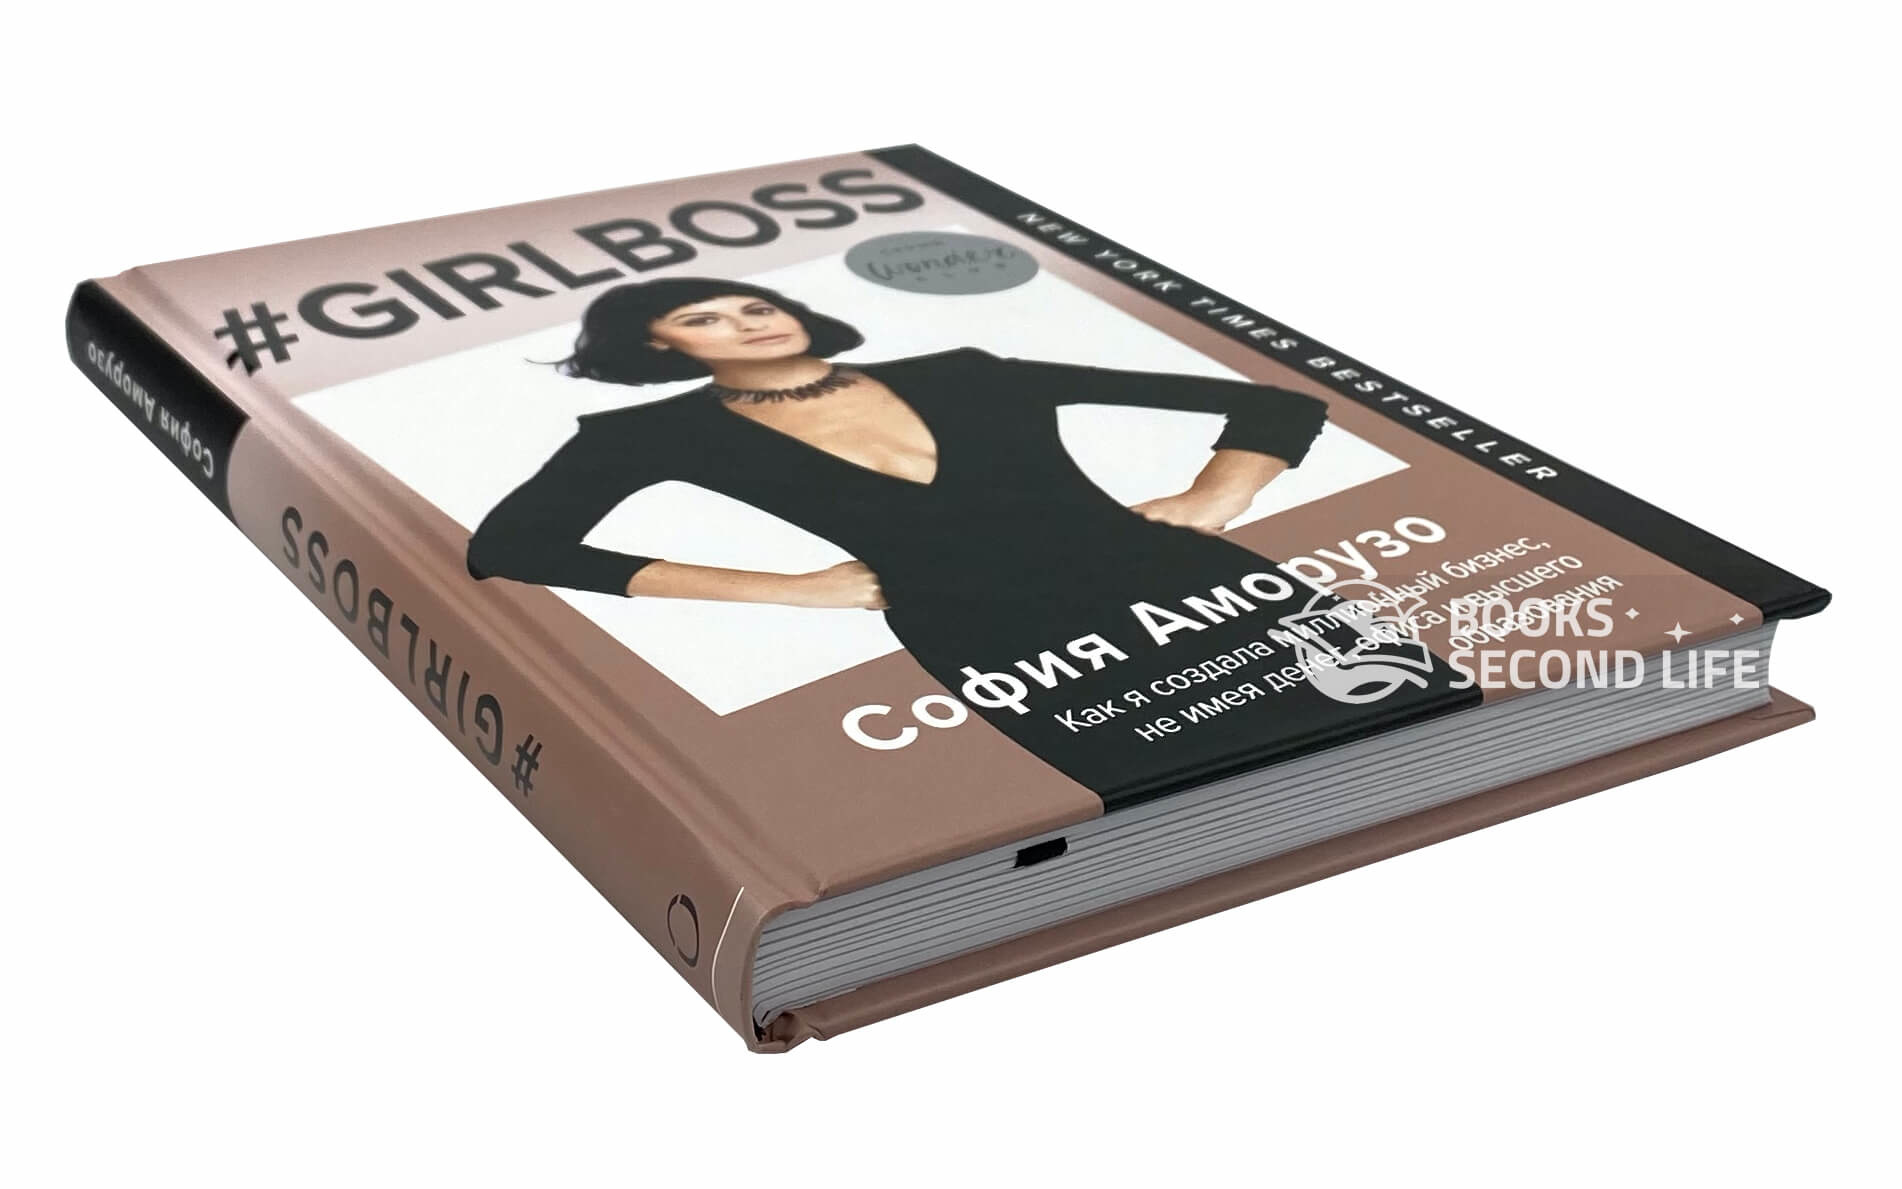 #Girlboss. Как я создала миллионный бизнес, не имея денег, офиса и высшего образования. Автор — София Аморузо. 